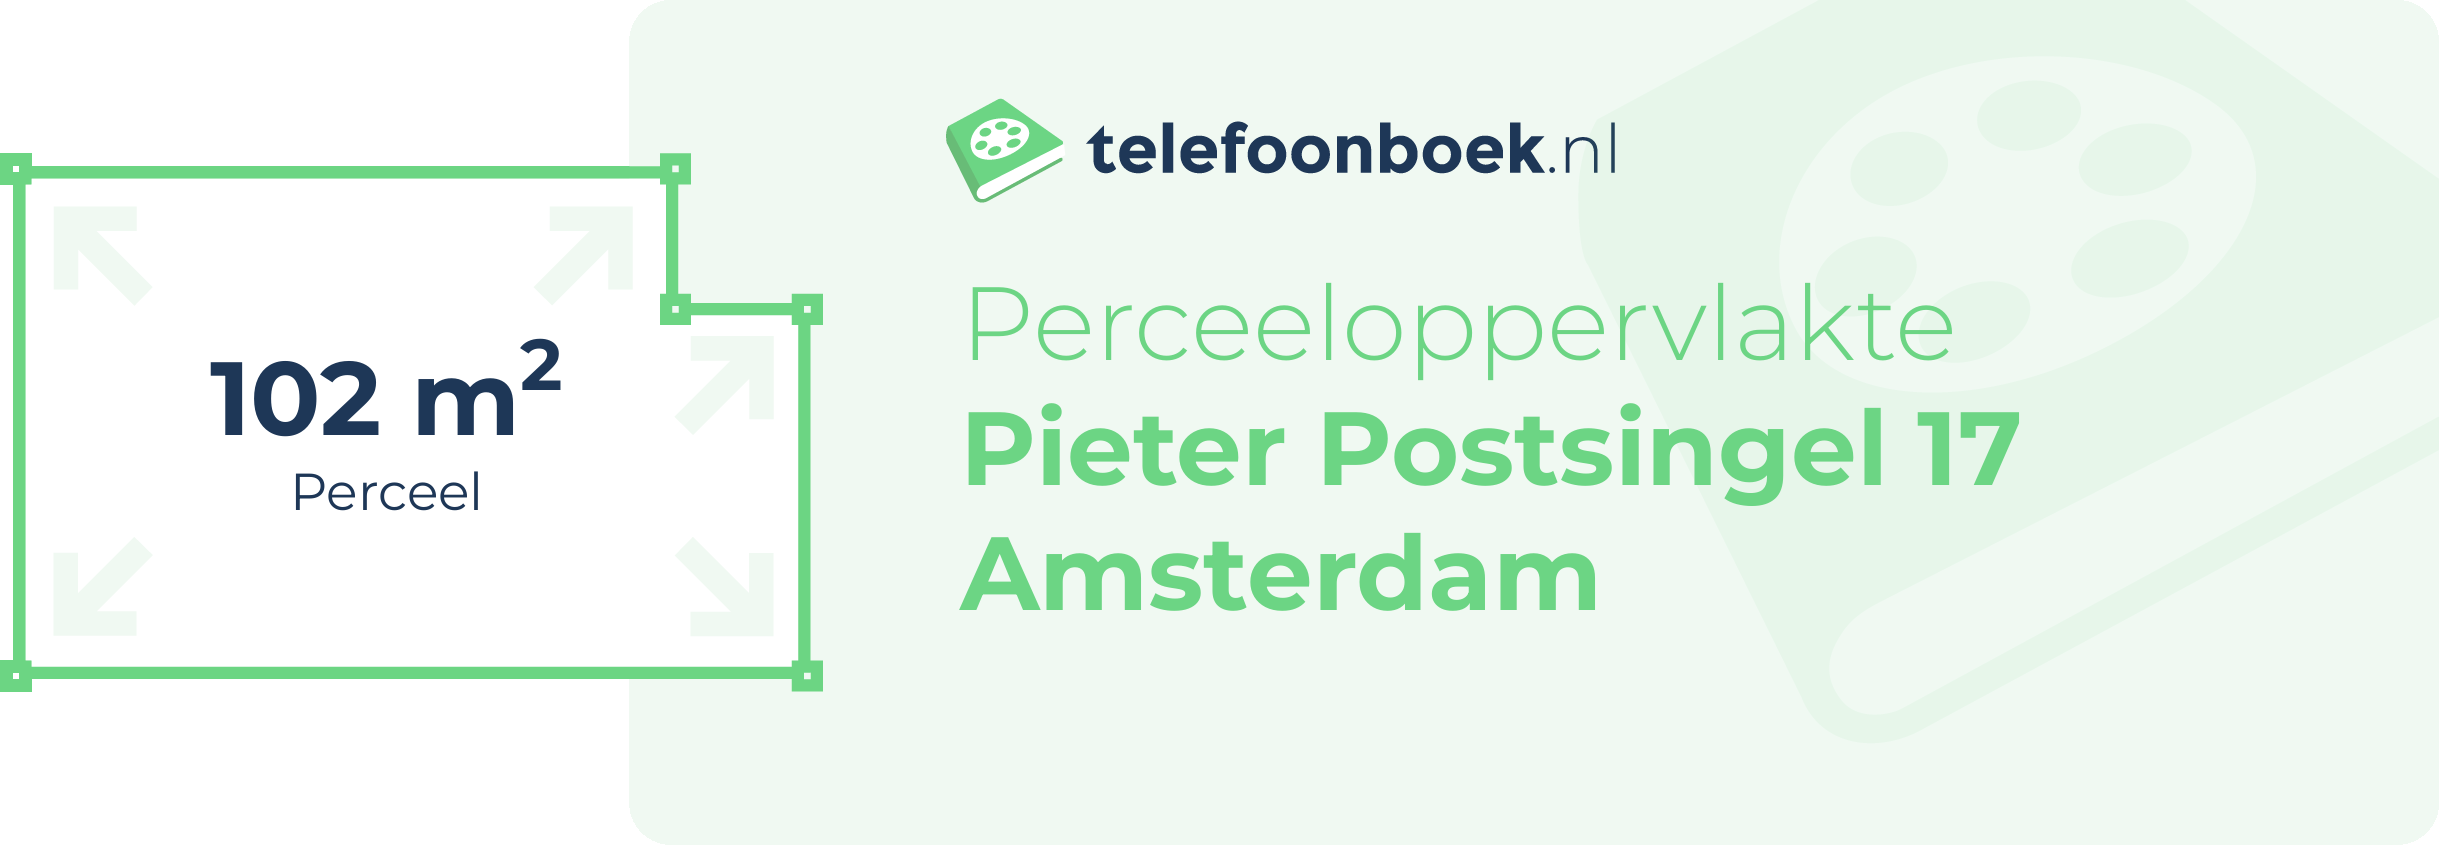 Perceeloppervlakte Pieter Postsingel 17 Amsterdam